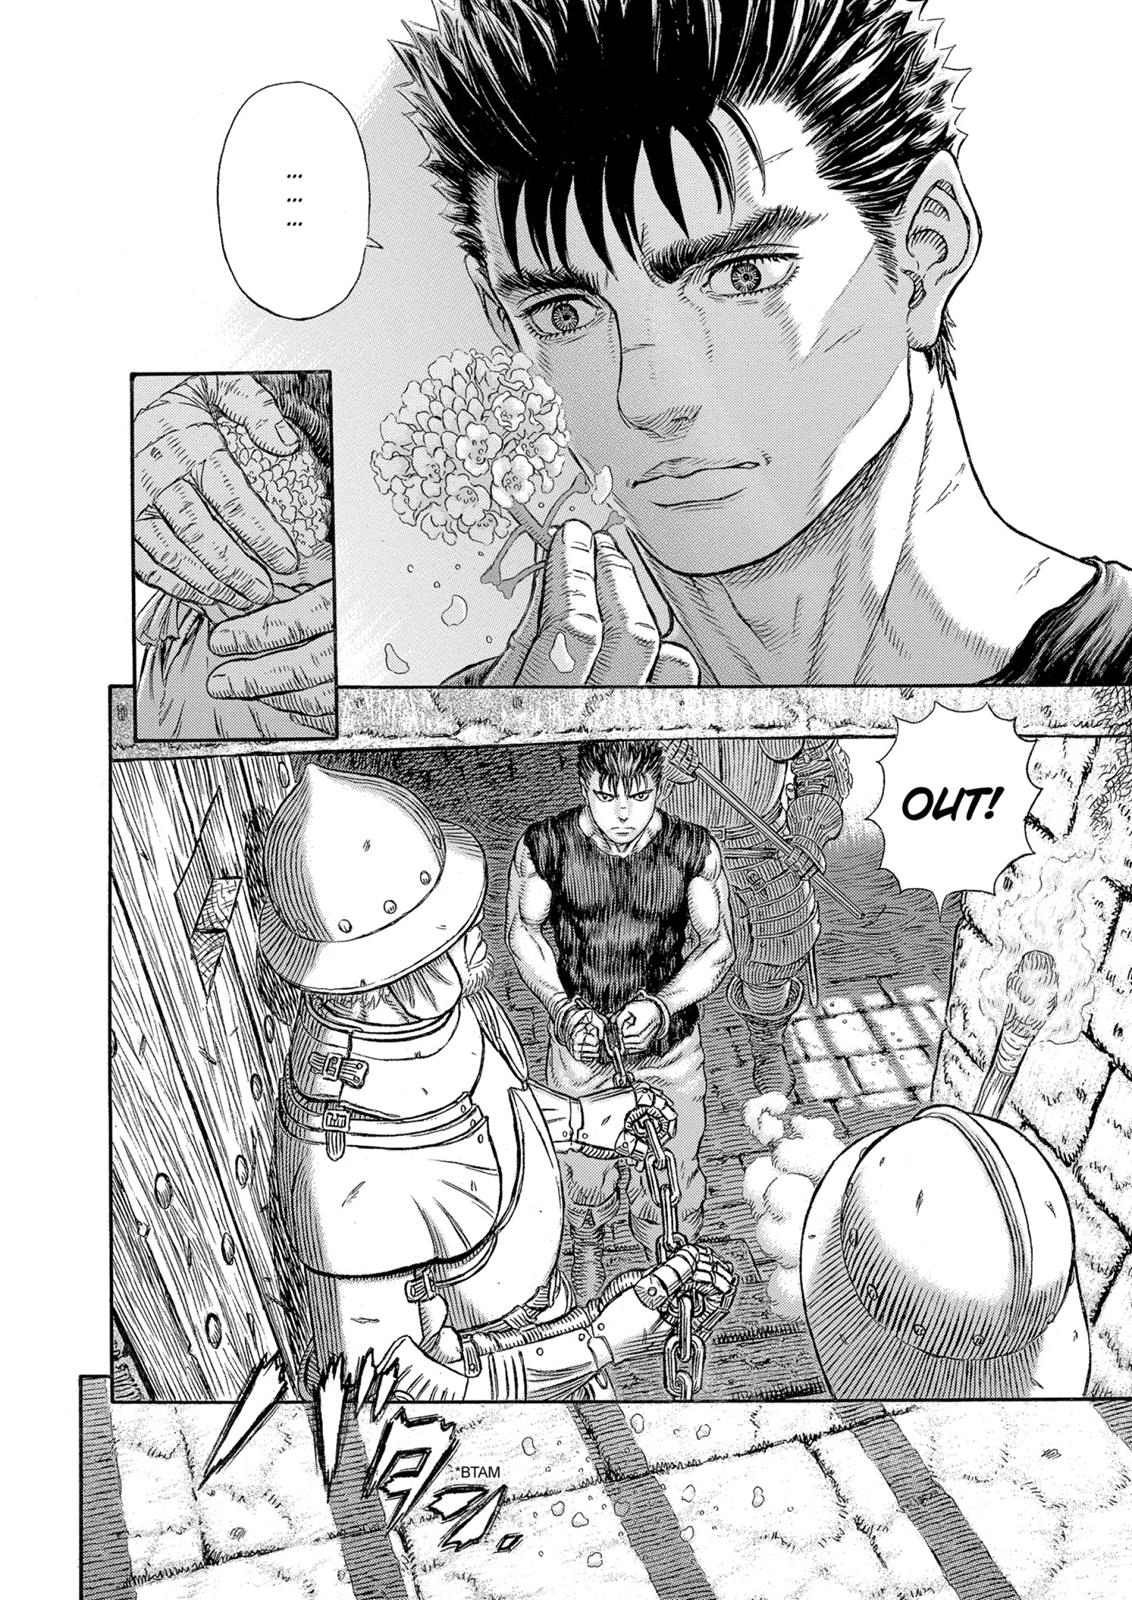 Berserk Manga Chapter 330 image 23